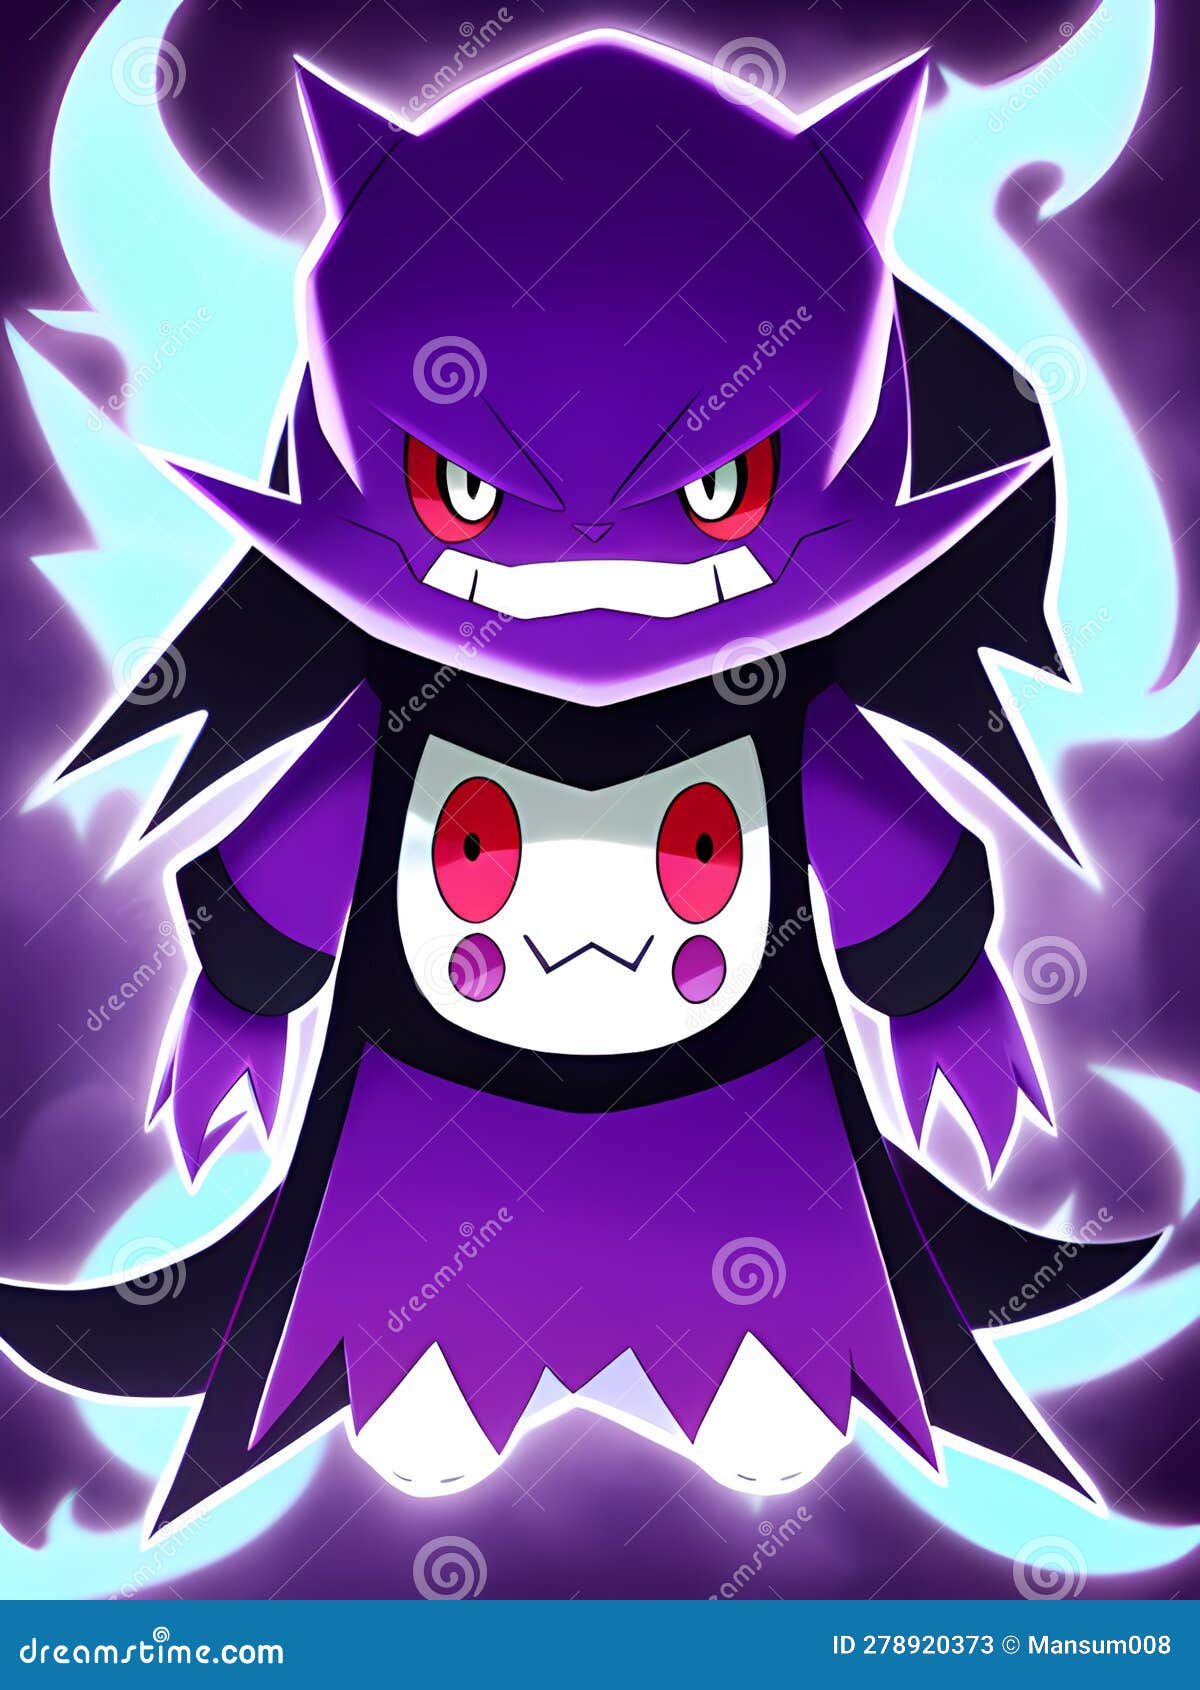 Pokemon Monster of the dark